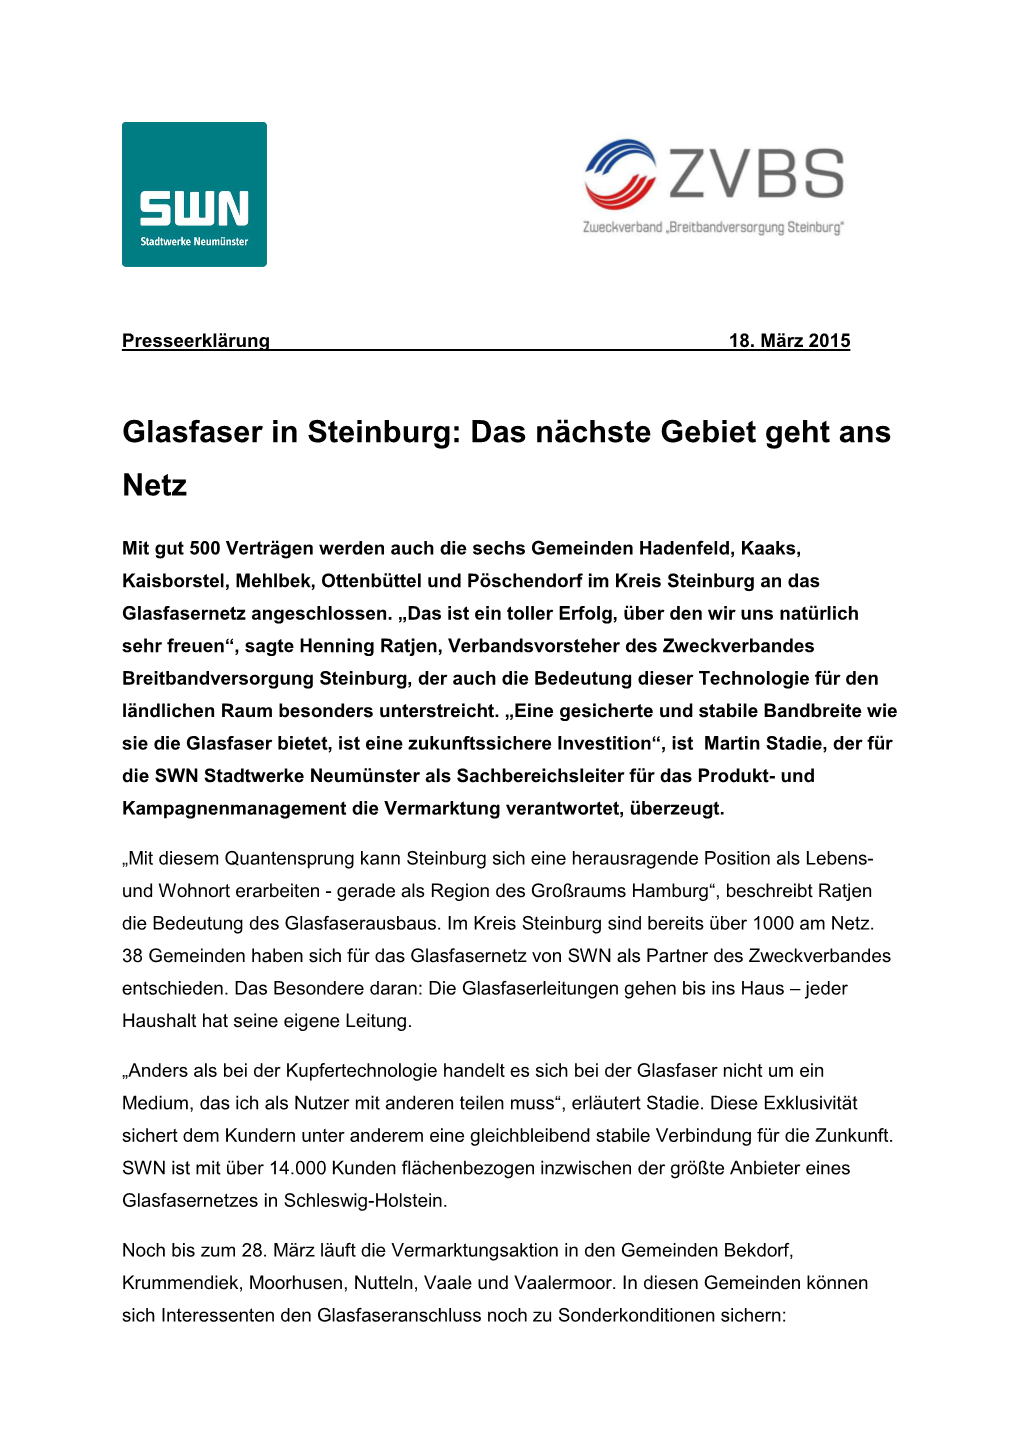 Glasfaser in Steinburg: Das Nächste Gebiet Geht Ans Netz